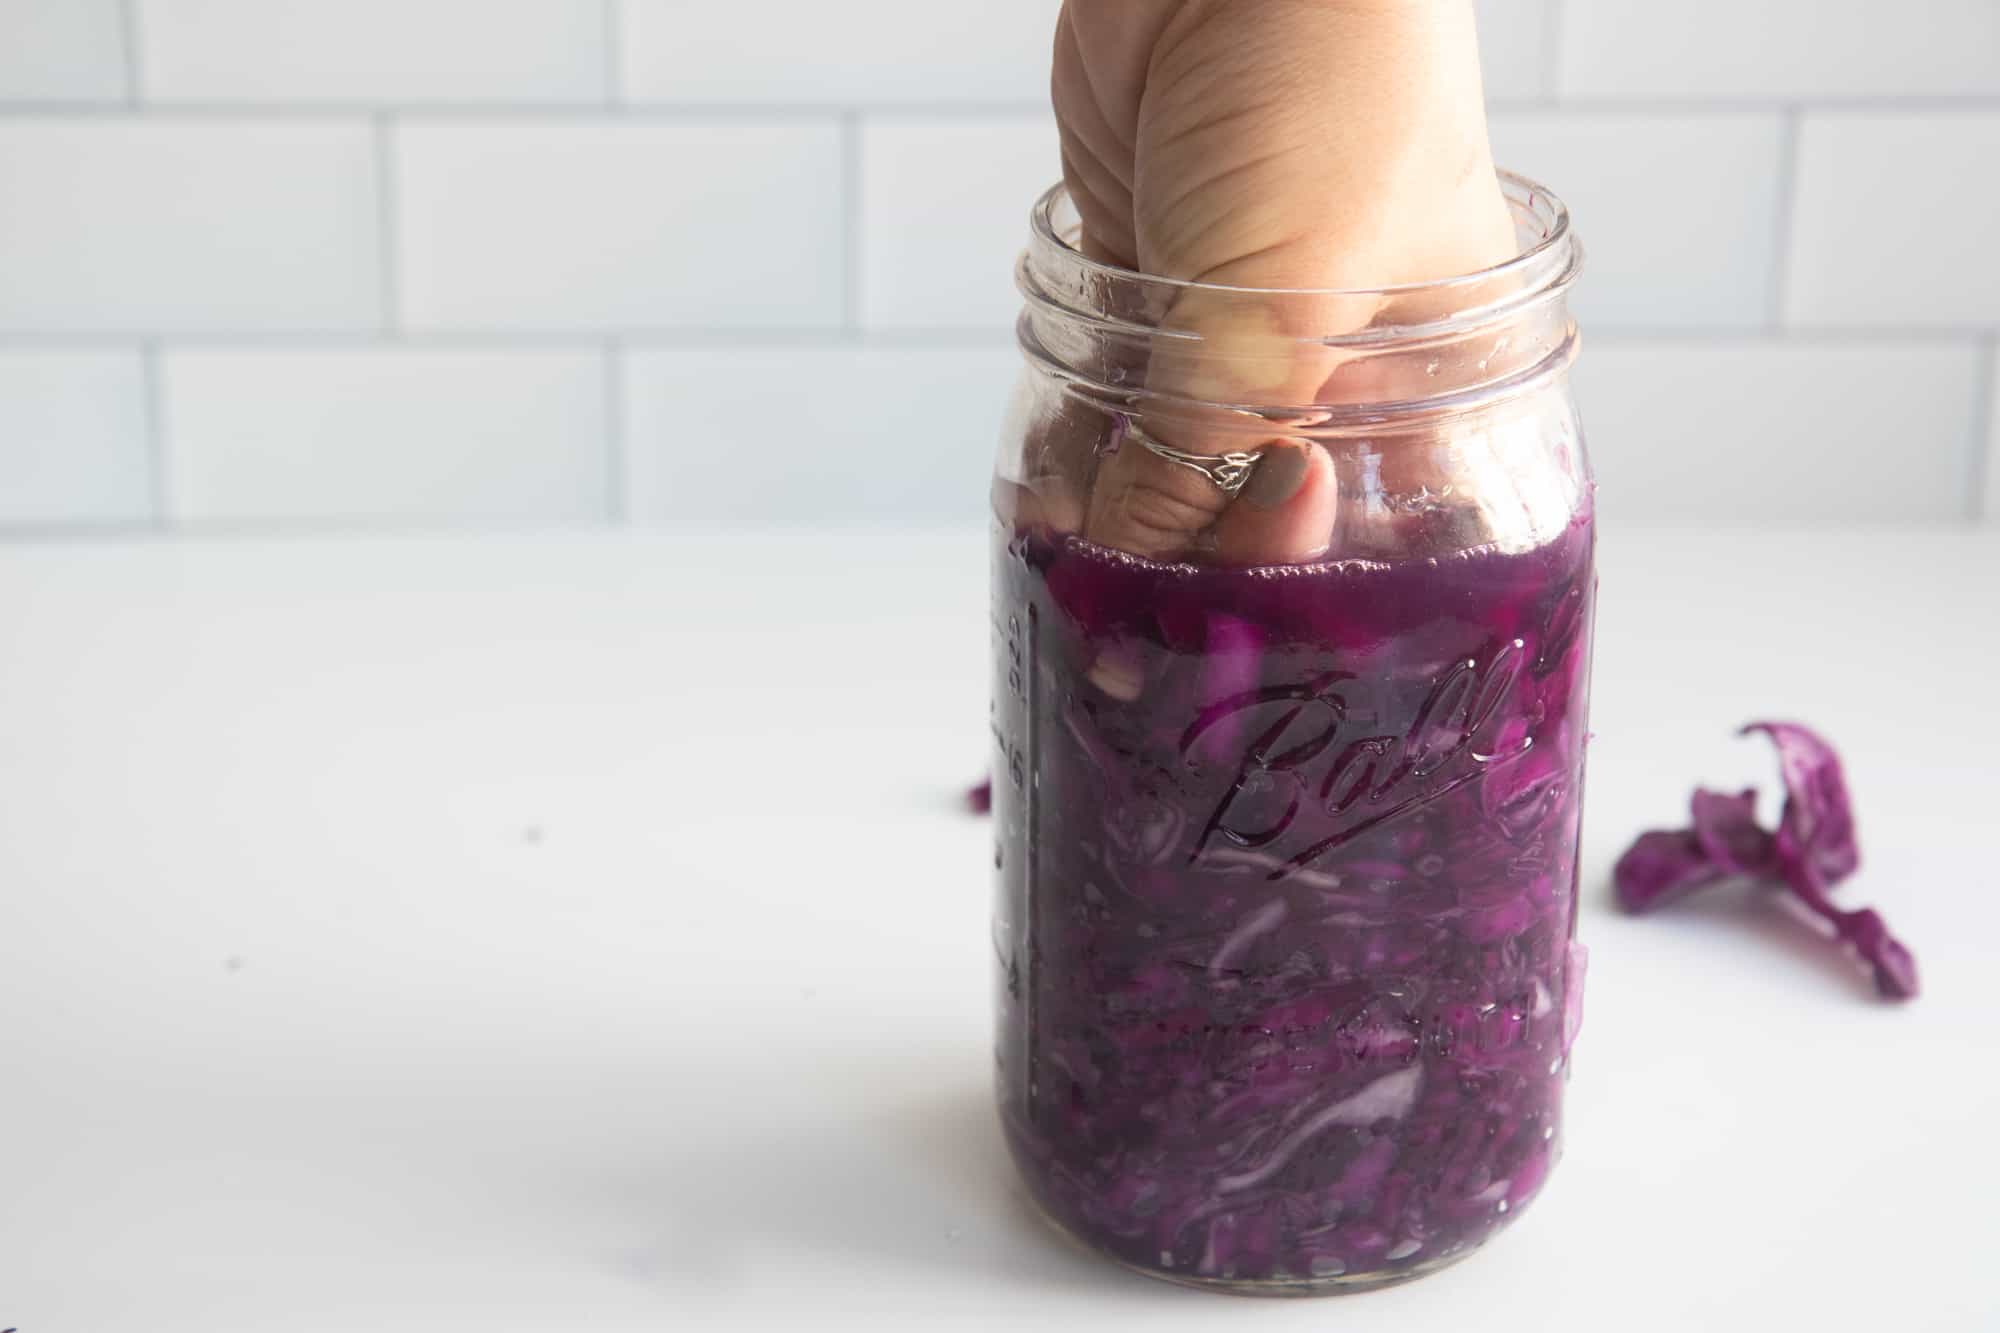 A fist packs sauerkraut into a glass jar.